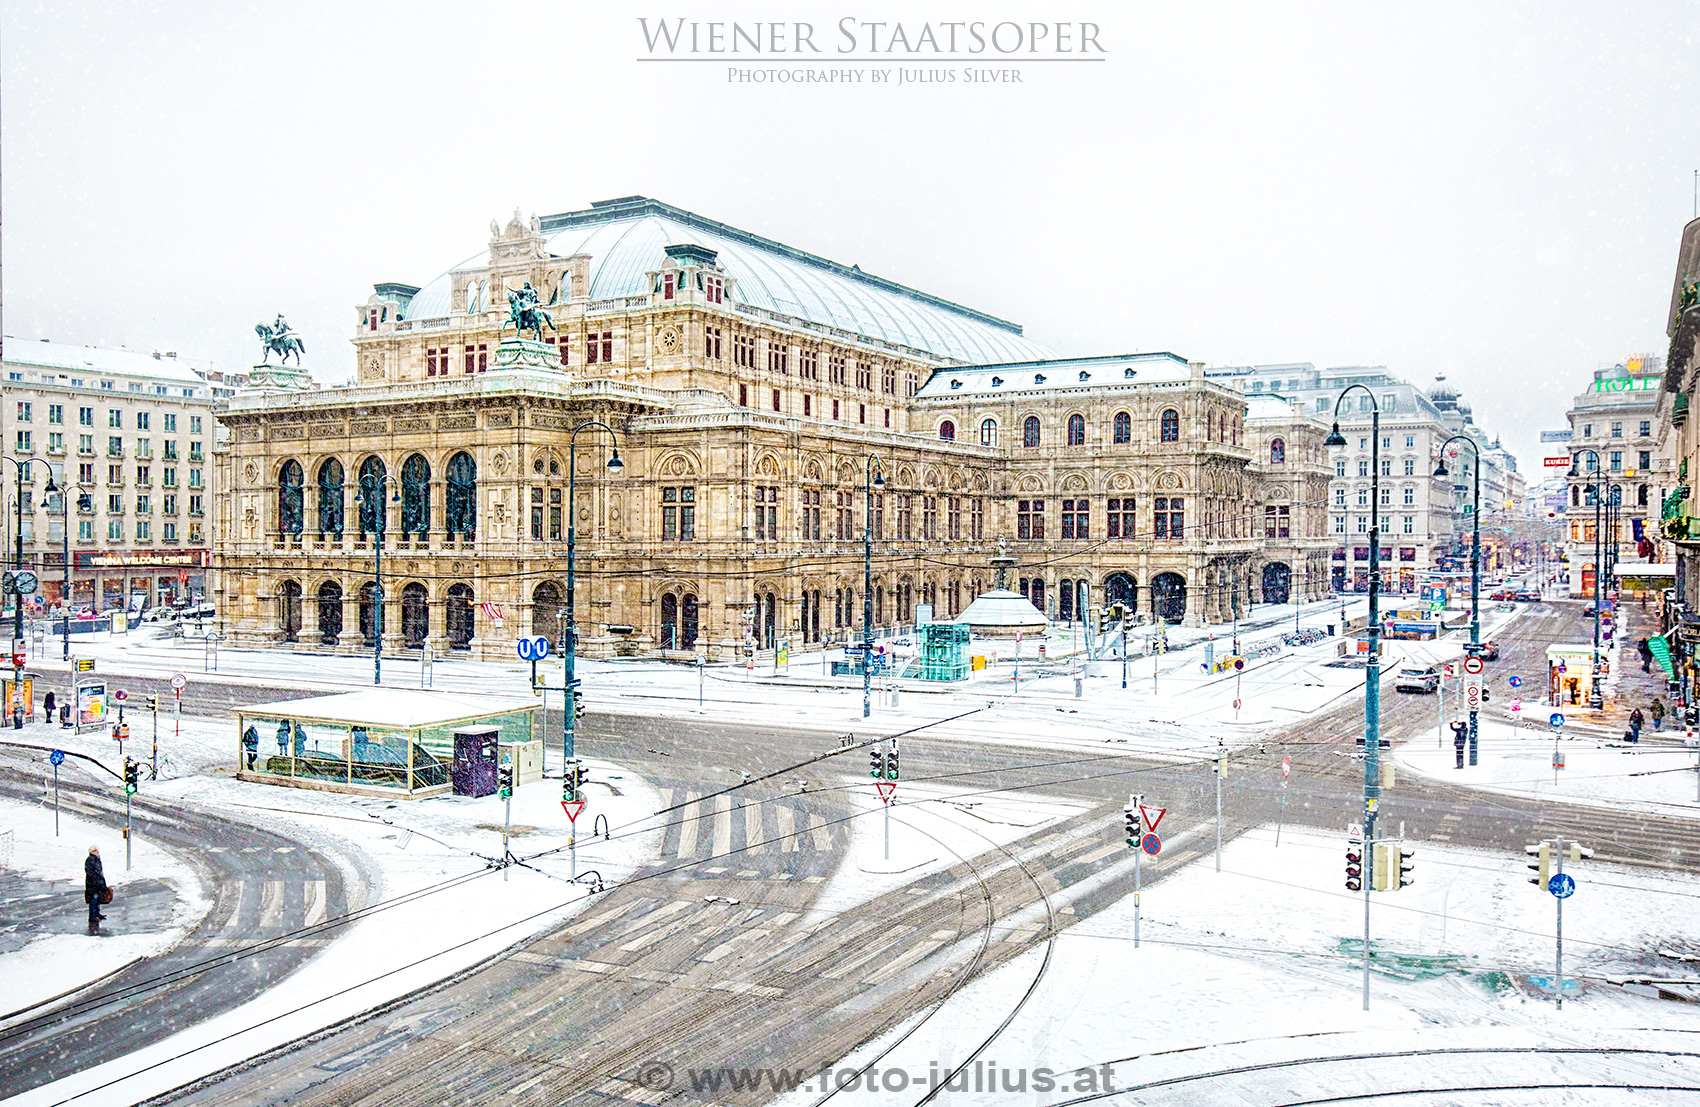 W6948a_Wien_Staatsoper_Winter.jpg, 1,0MB